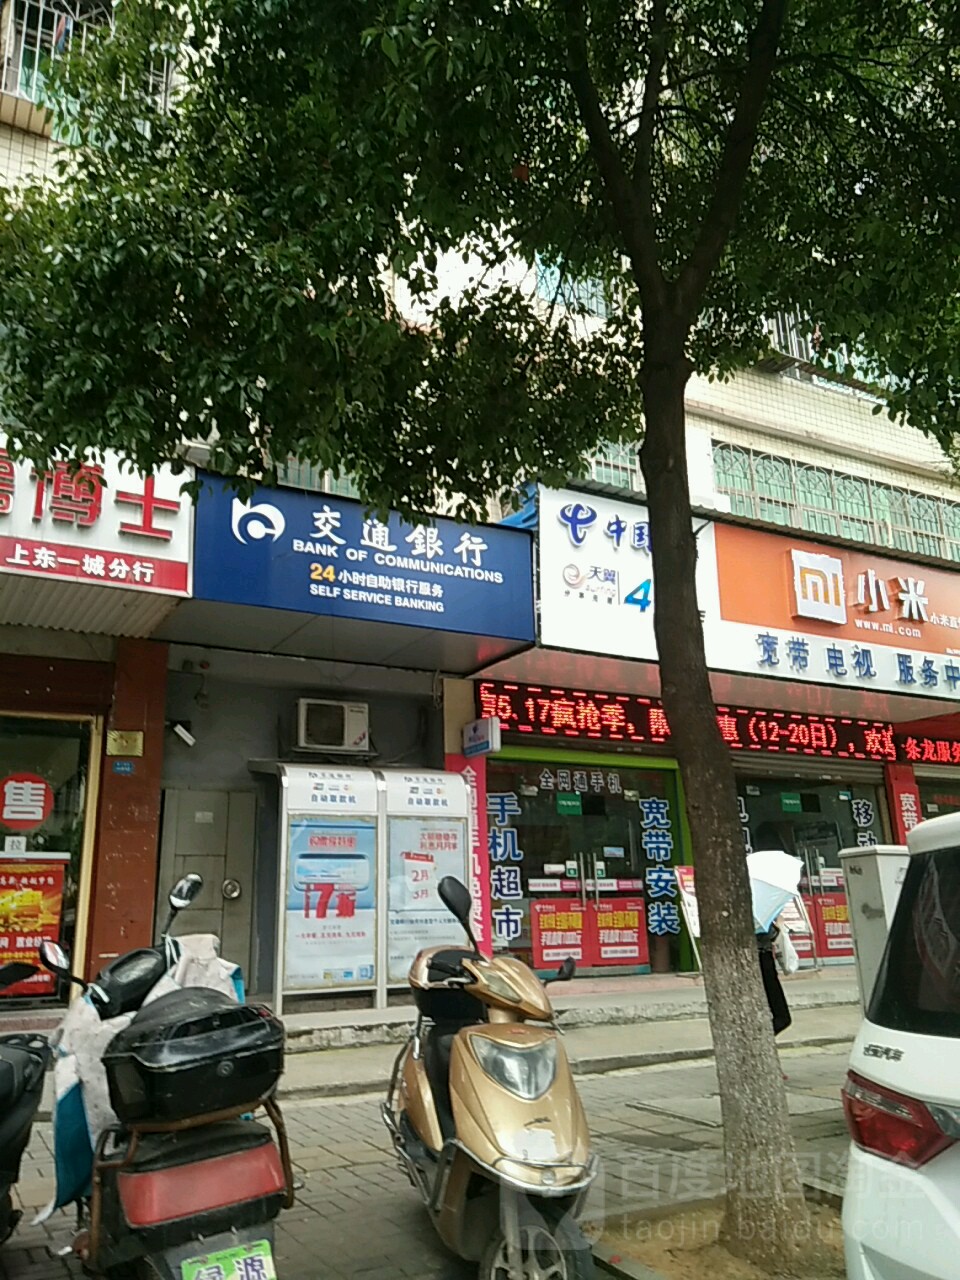 岳陽農村商業銀行24小時自助銀行服務